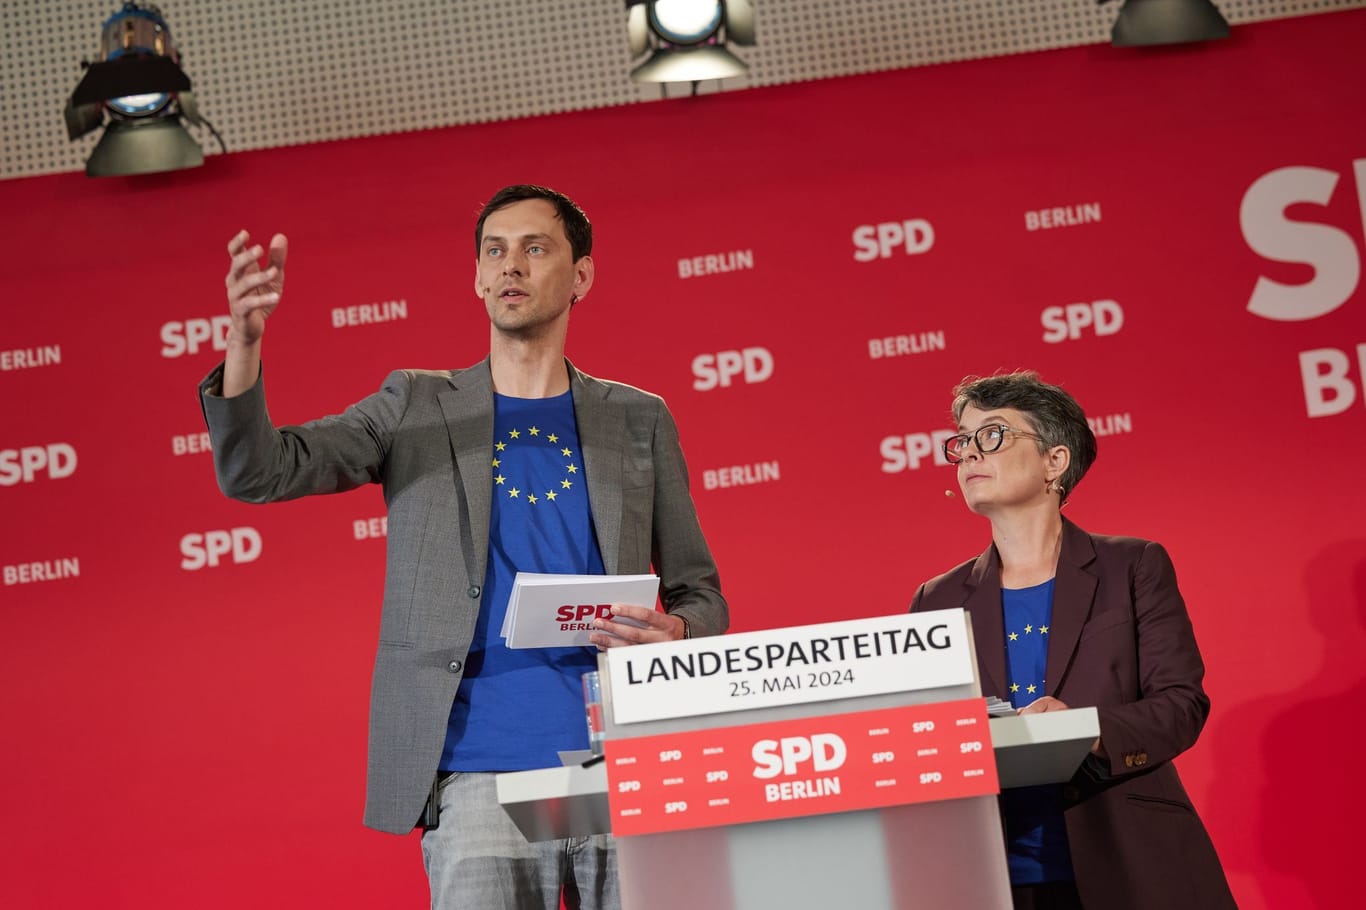 25.05.2024, Berlin: Martin Hikel (SPD), Neuköllns Bezirksbürgermeister, und Nicola Böcker-Giannini (SPD), Ex-Staatssekretärin, bewerben sich beim Landesparteitag der SPD Berlin um den Landesvorsitz. Beide haben die Mitgliederbefragung um den Parteivorstand gewonnen.